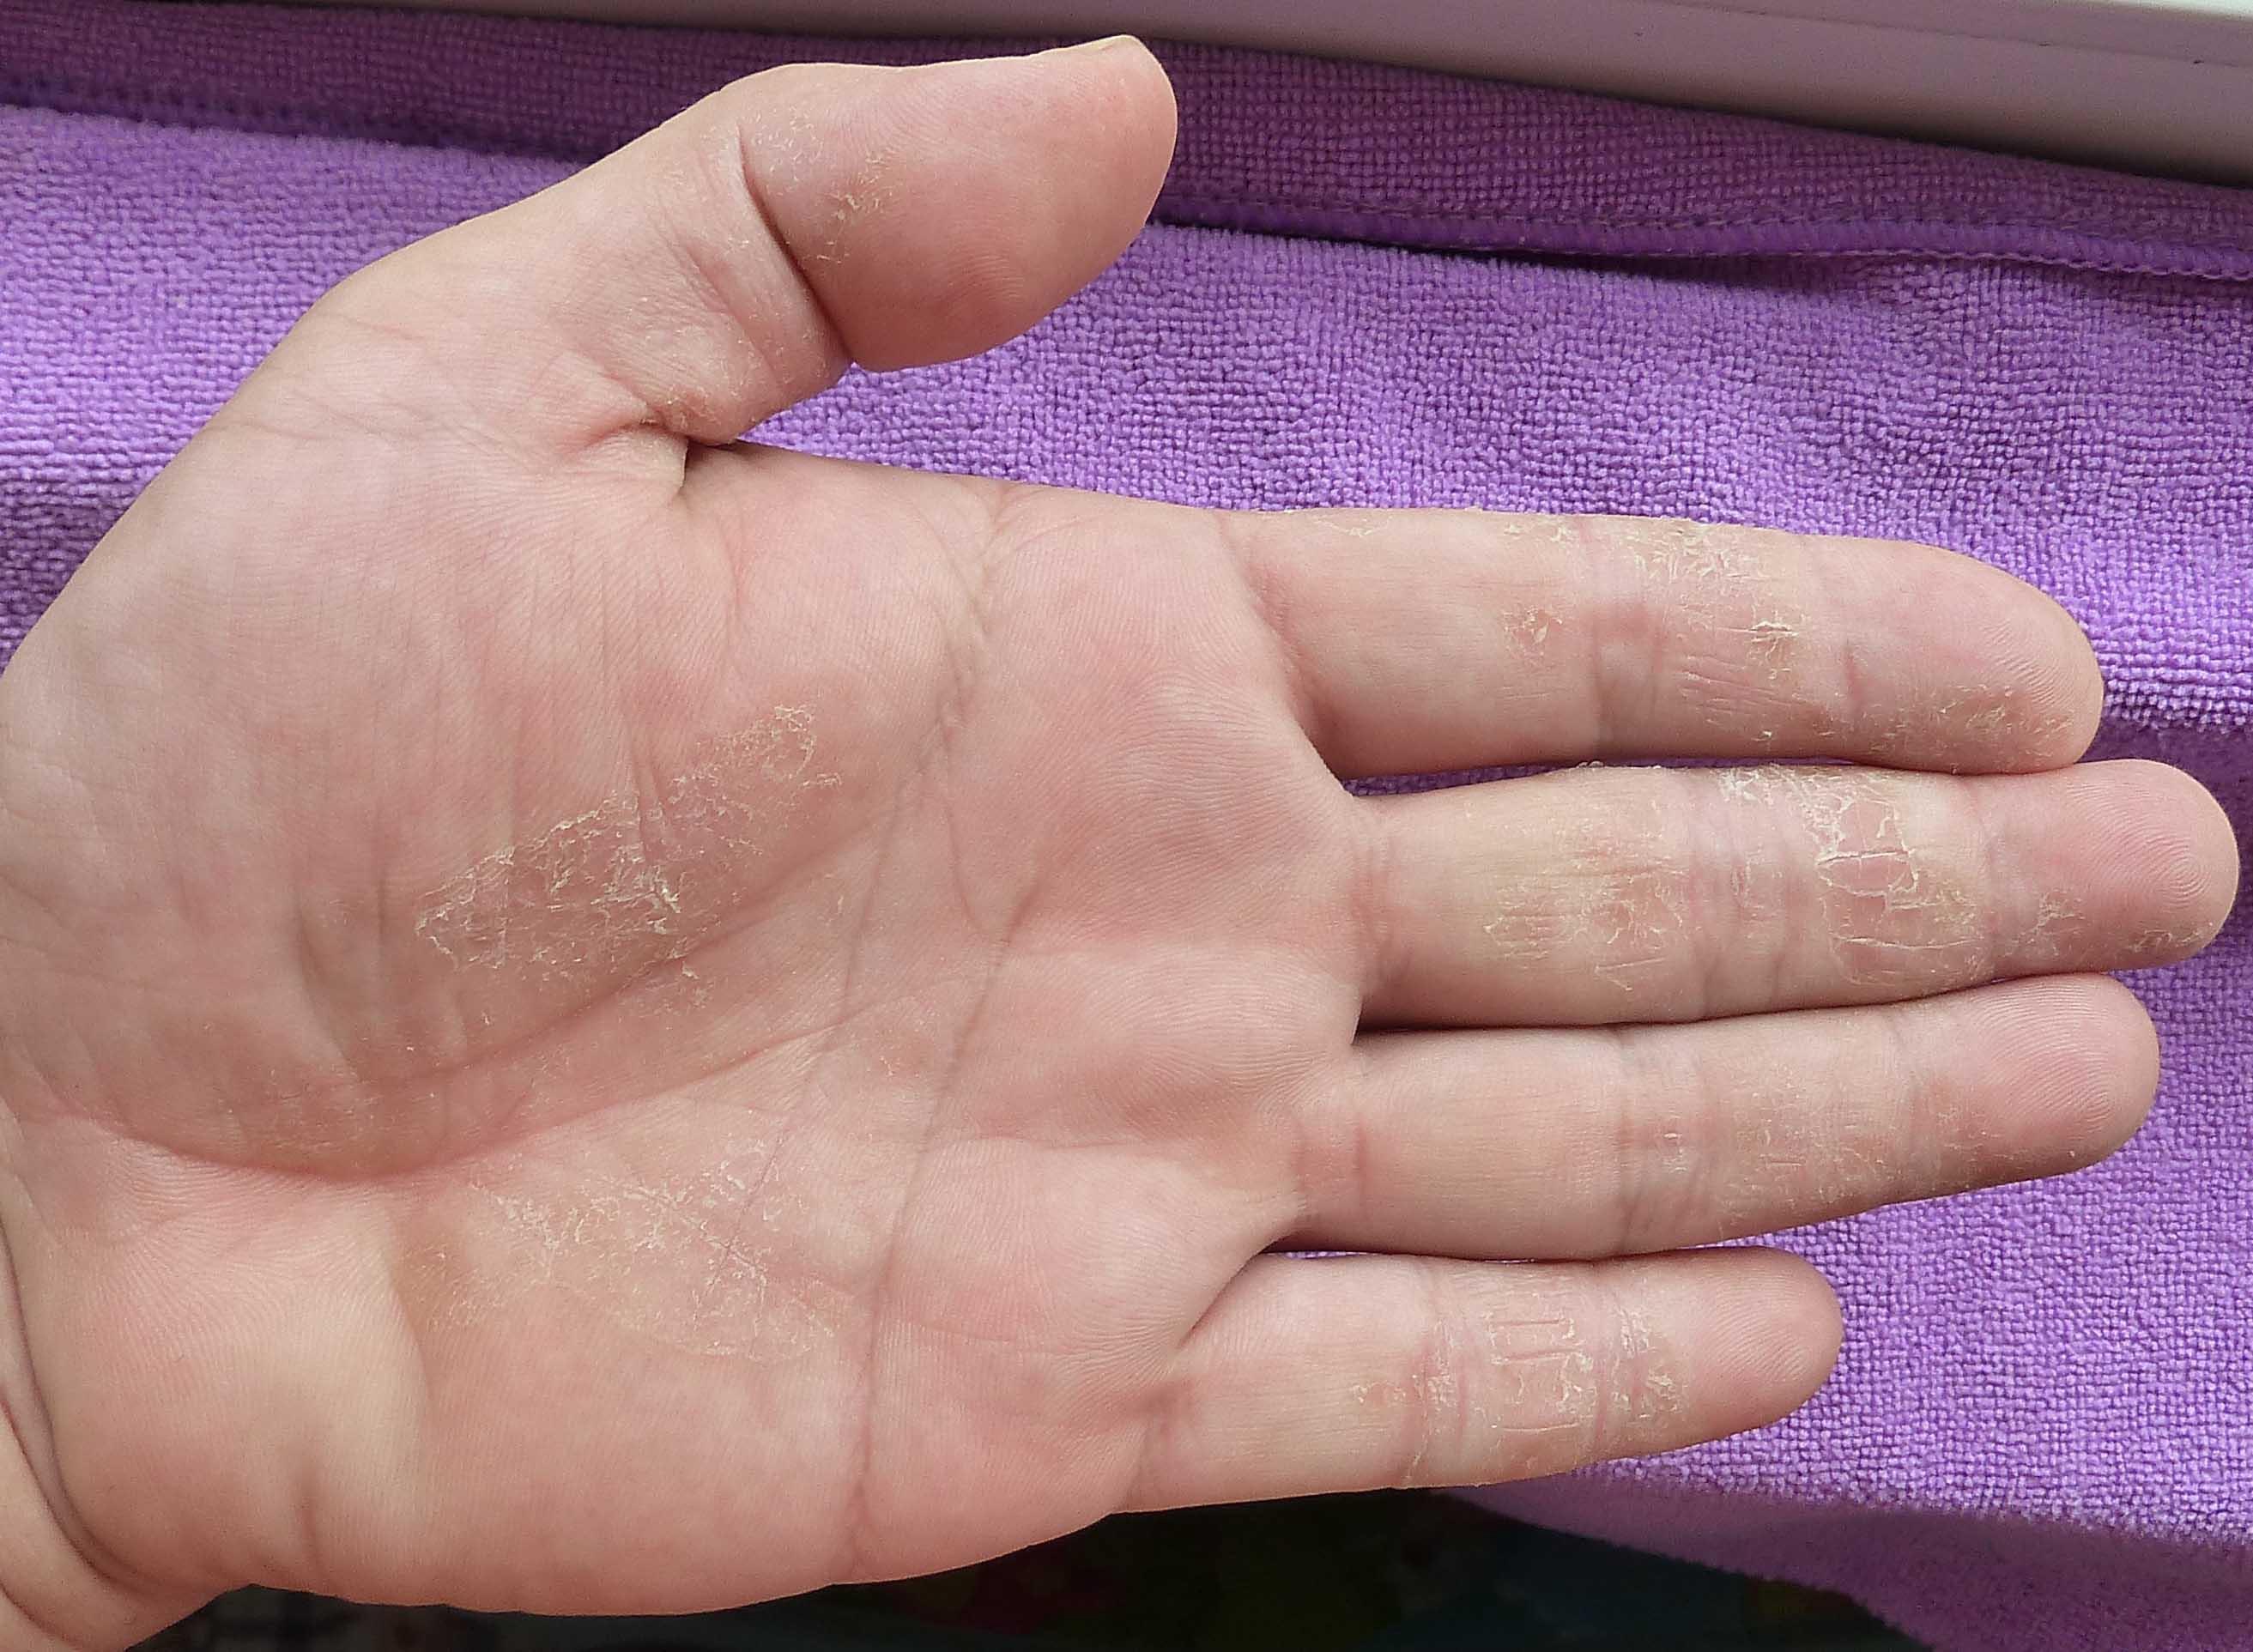 手足皲裂性湿疹图片图片